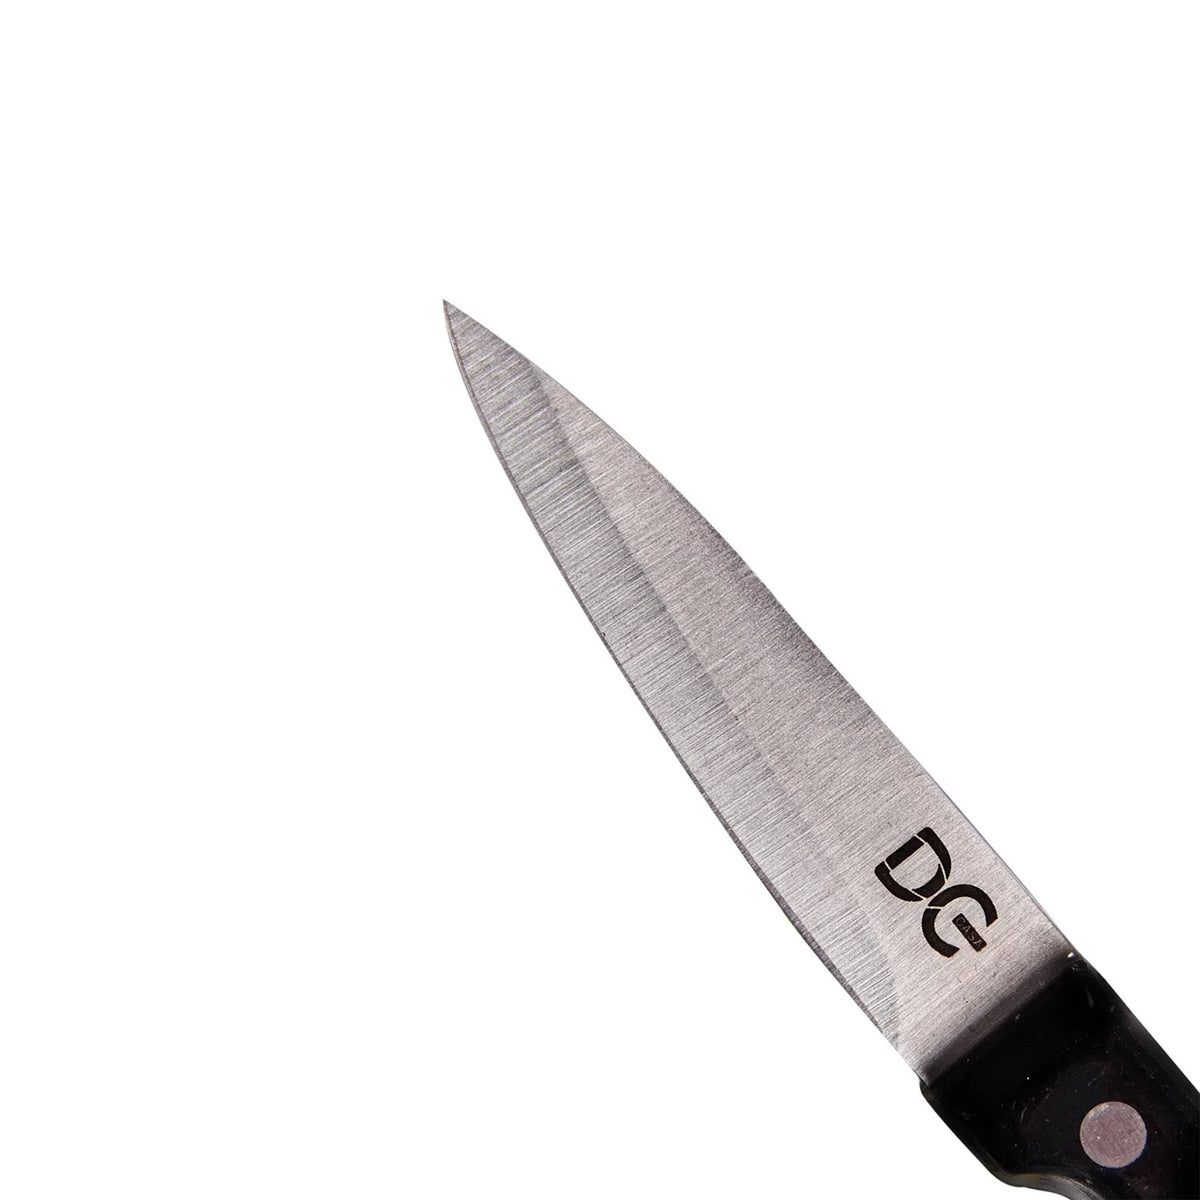 Stalowy nóż SPELCHCCHINO z czarnym ergonomicznym uchwytem - 9 cm